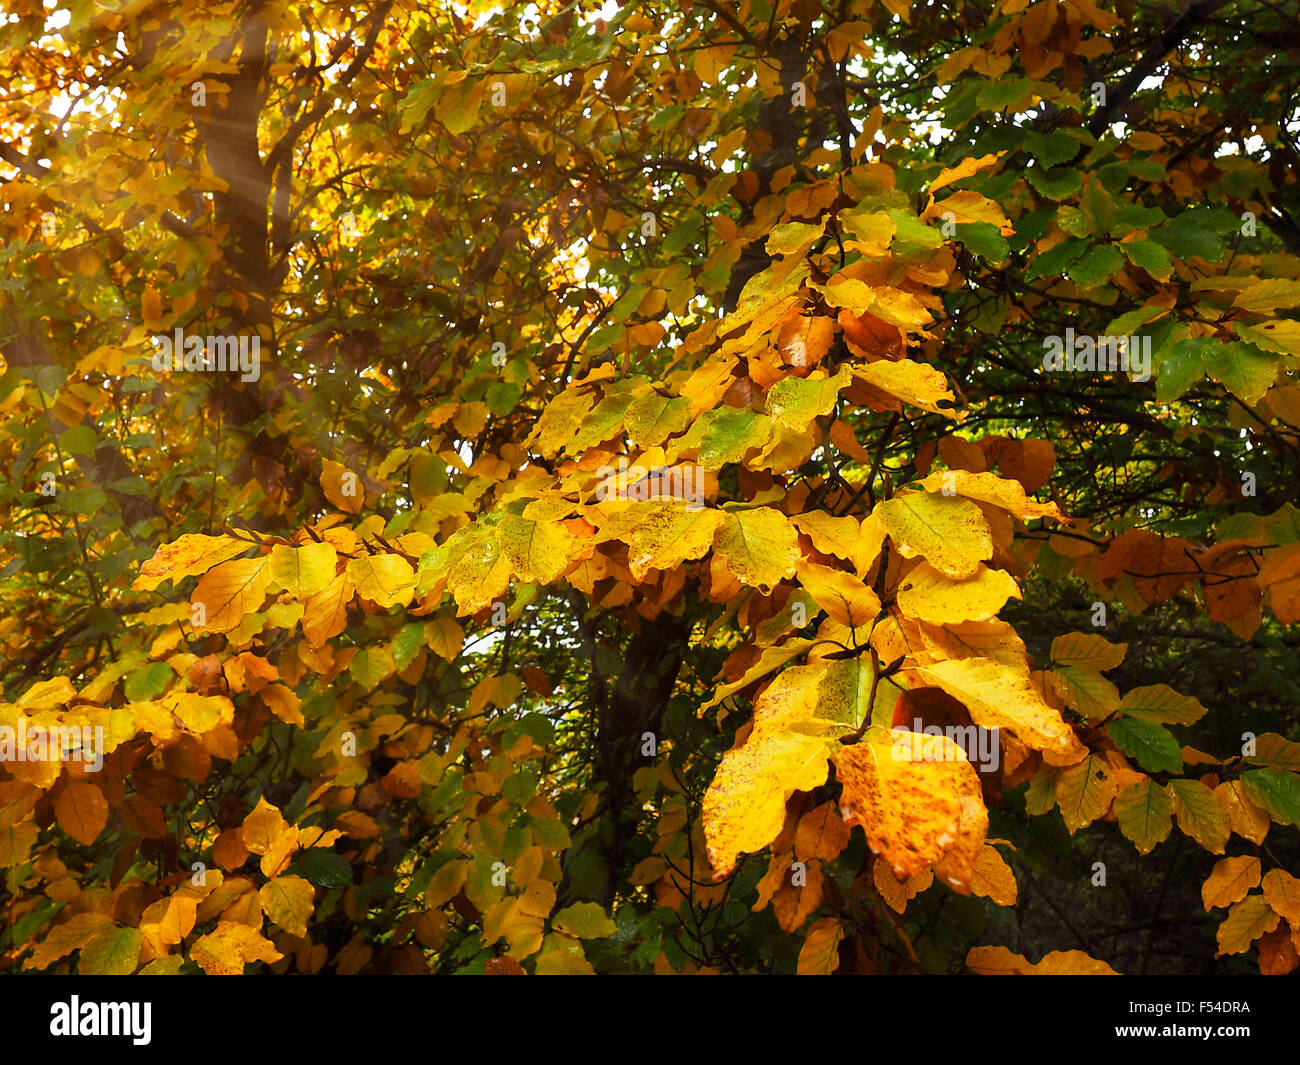 sun in autumn tree Stock Photo